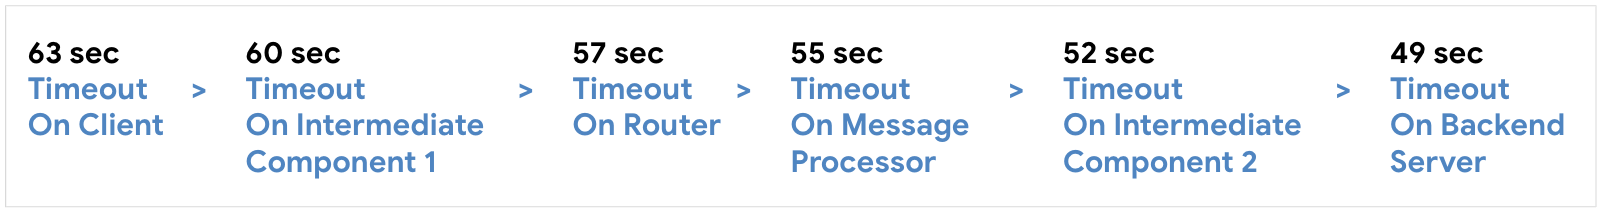 Konfigurieren Sie das Zeitlimit auf dem Client bei 63 Sekunden, dann auf die Zwischenkomponente 1 bei 60 Sekunden, den Router bei 57 Sekunden, dann auf den Message Processor St 55 Sekunden, die Zwischenkomponente 2 bei 52 Sekunden und auf dem Back-End-Server bei 59 Sekunden.